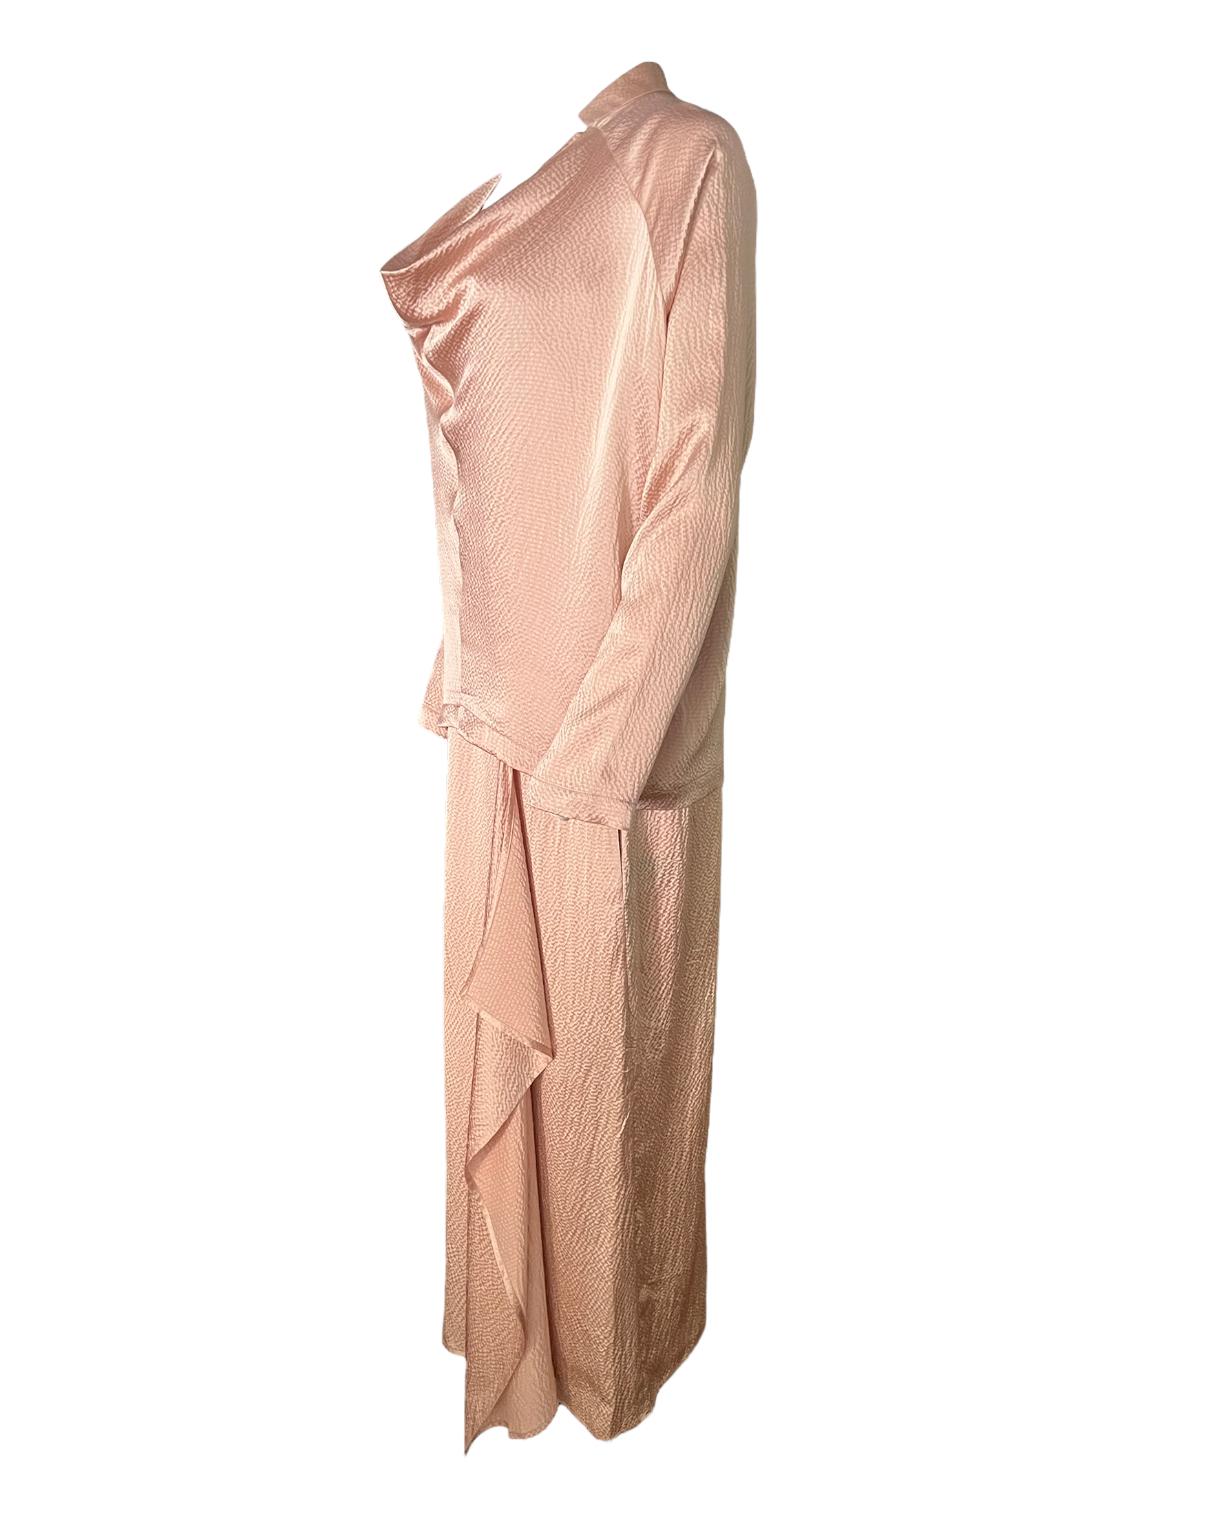 Das Kleid:
- Bodenlänge
- Ärmellos
- Rundhalsausschnitt
- Mit Taschendetail auf jeder Seite
Maße: Länge: 53,5